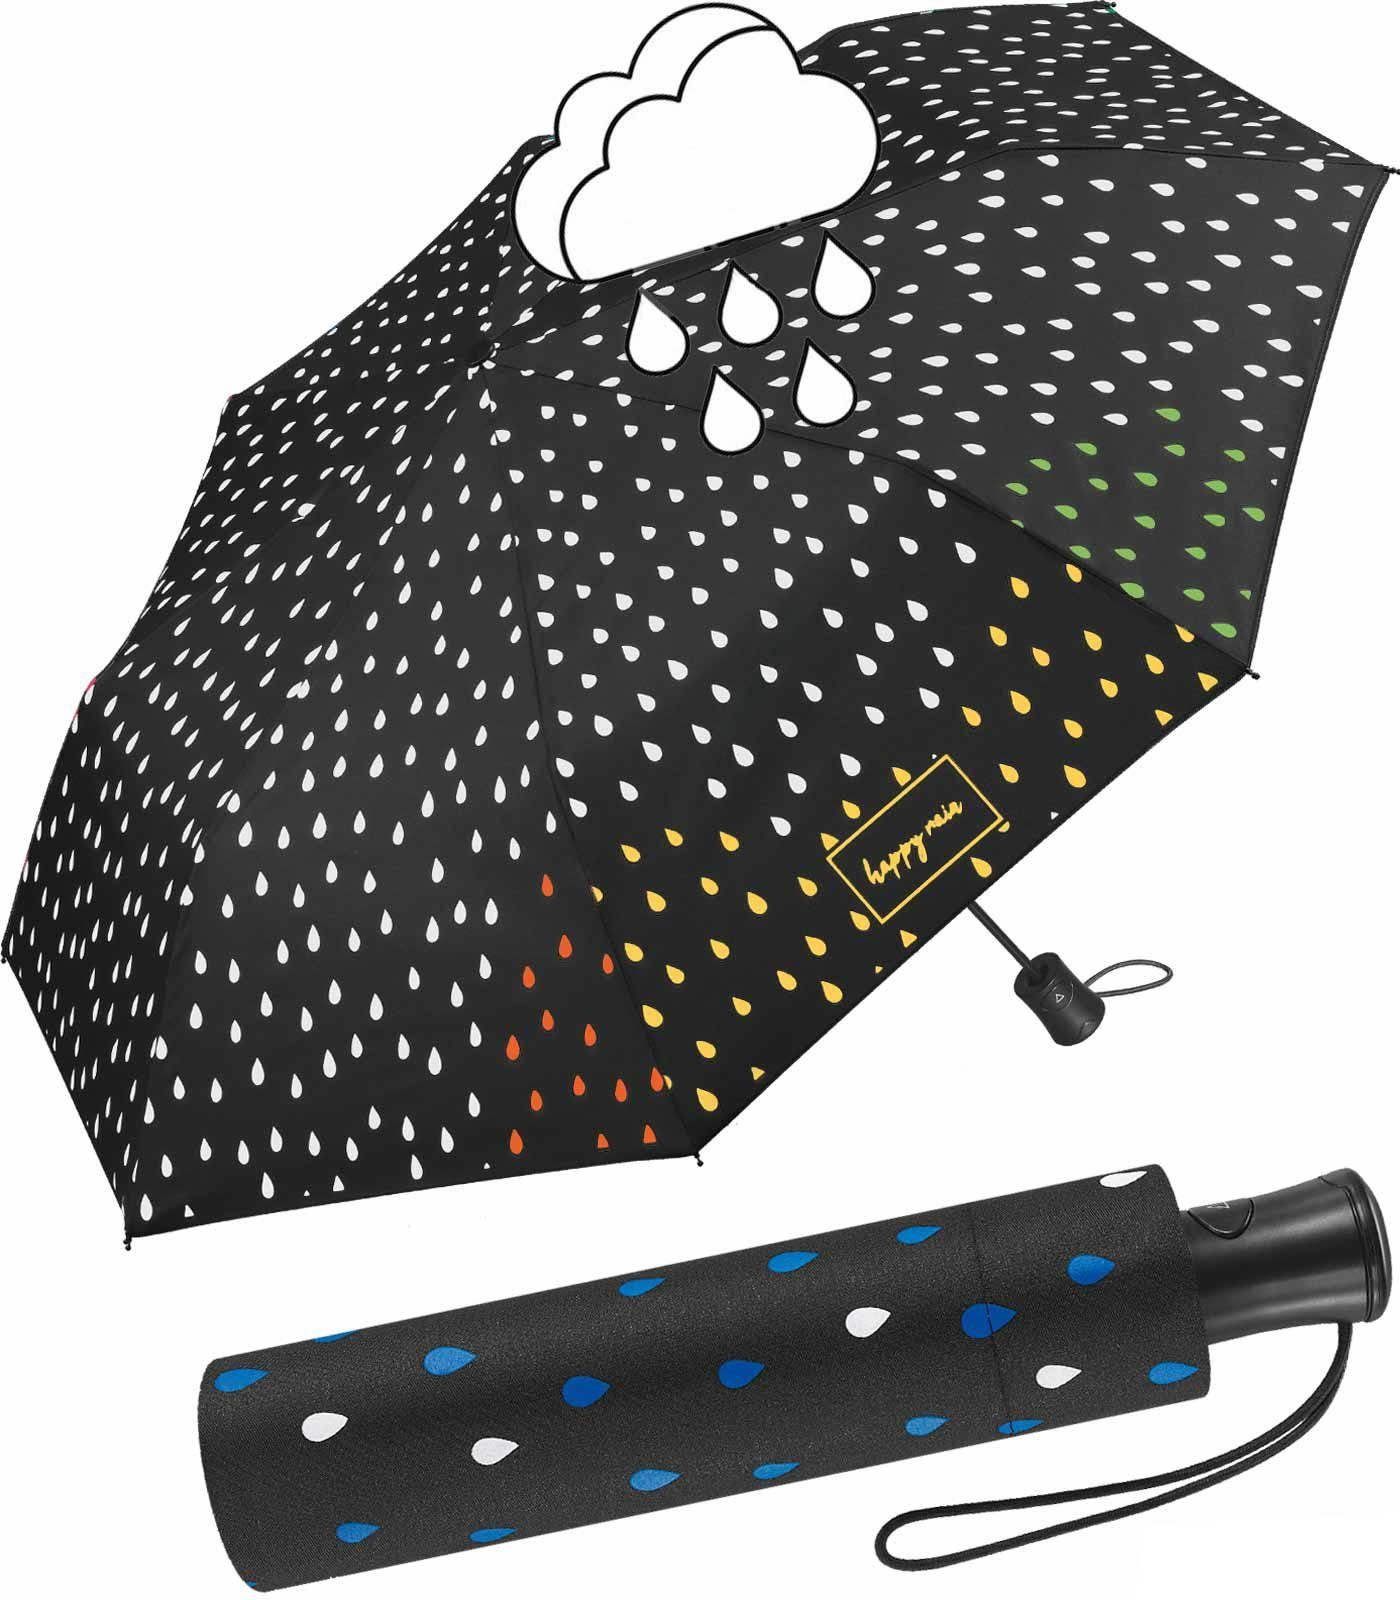 HAPPY RAIN Langregenschirm schöner Damen-Regenschirm mit Auf-Automatik, die weißen Tropfen färben sich bei Nässe bunt